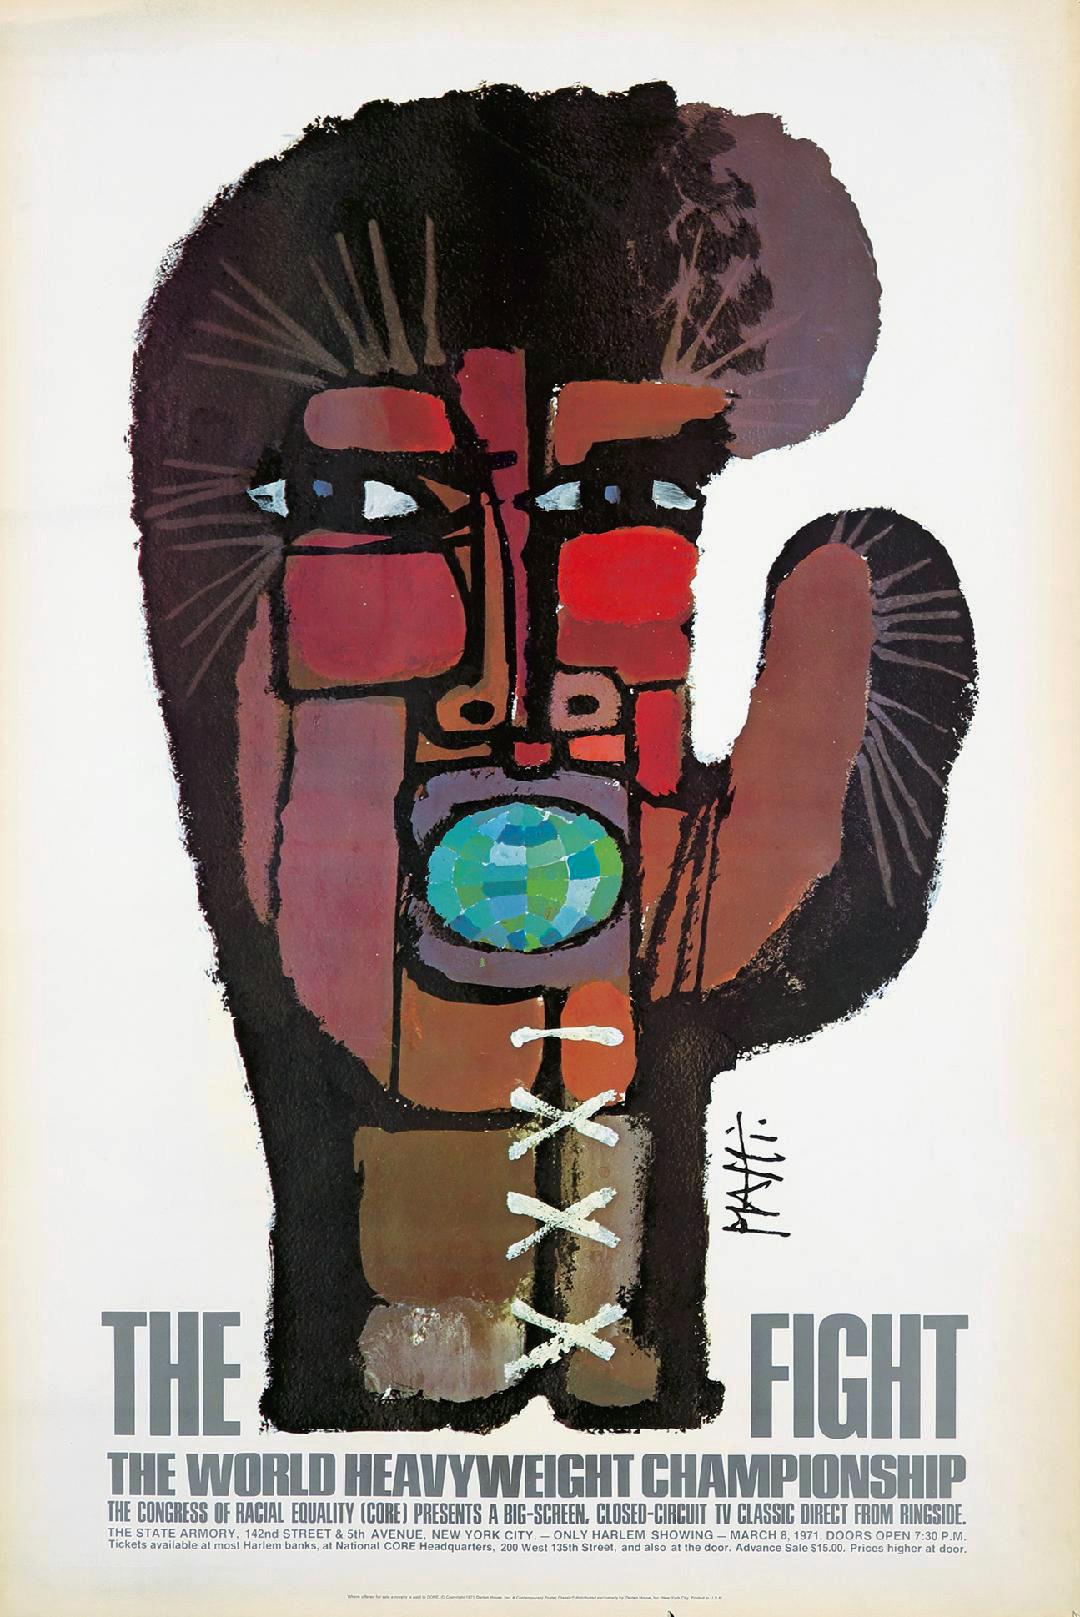 Der Kampf" von Celestino Piatti
Das 30 x 45 Zoll große Plakat wurde 1971 vom Schweizer Künstler Celestino Piatti entworfen, um für die exklusive Vorführung des ersten Ali/Frazier-Kampfes am 8. März 1971 im Madison Square Garden in Harlem zu werben.